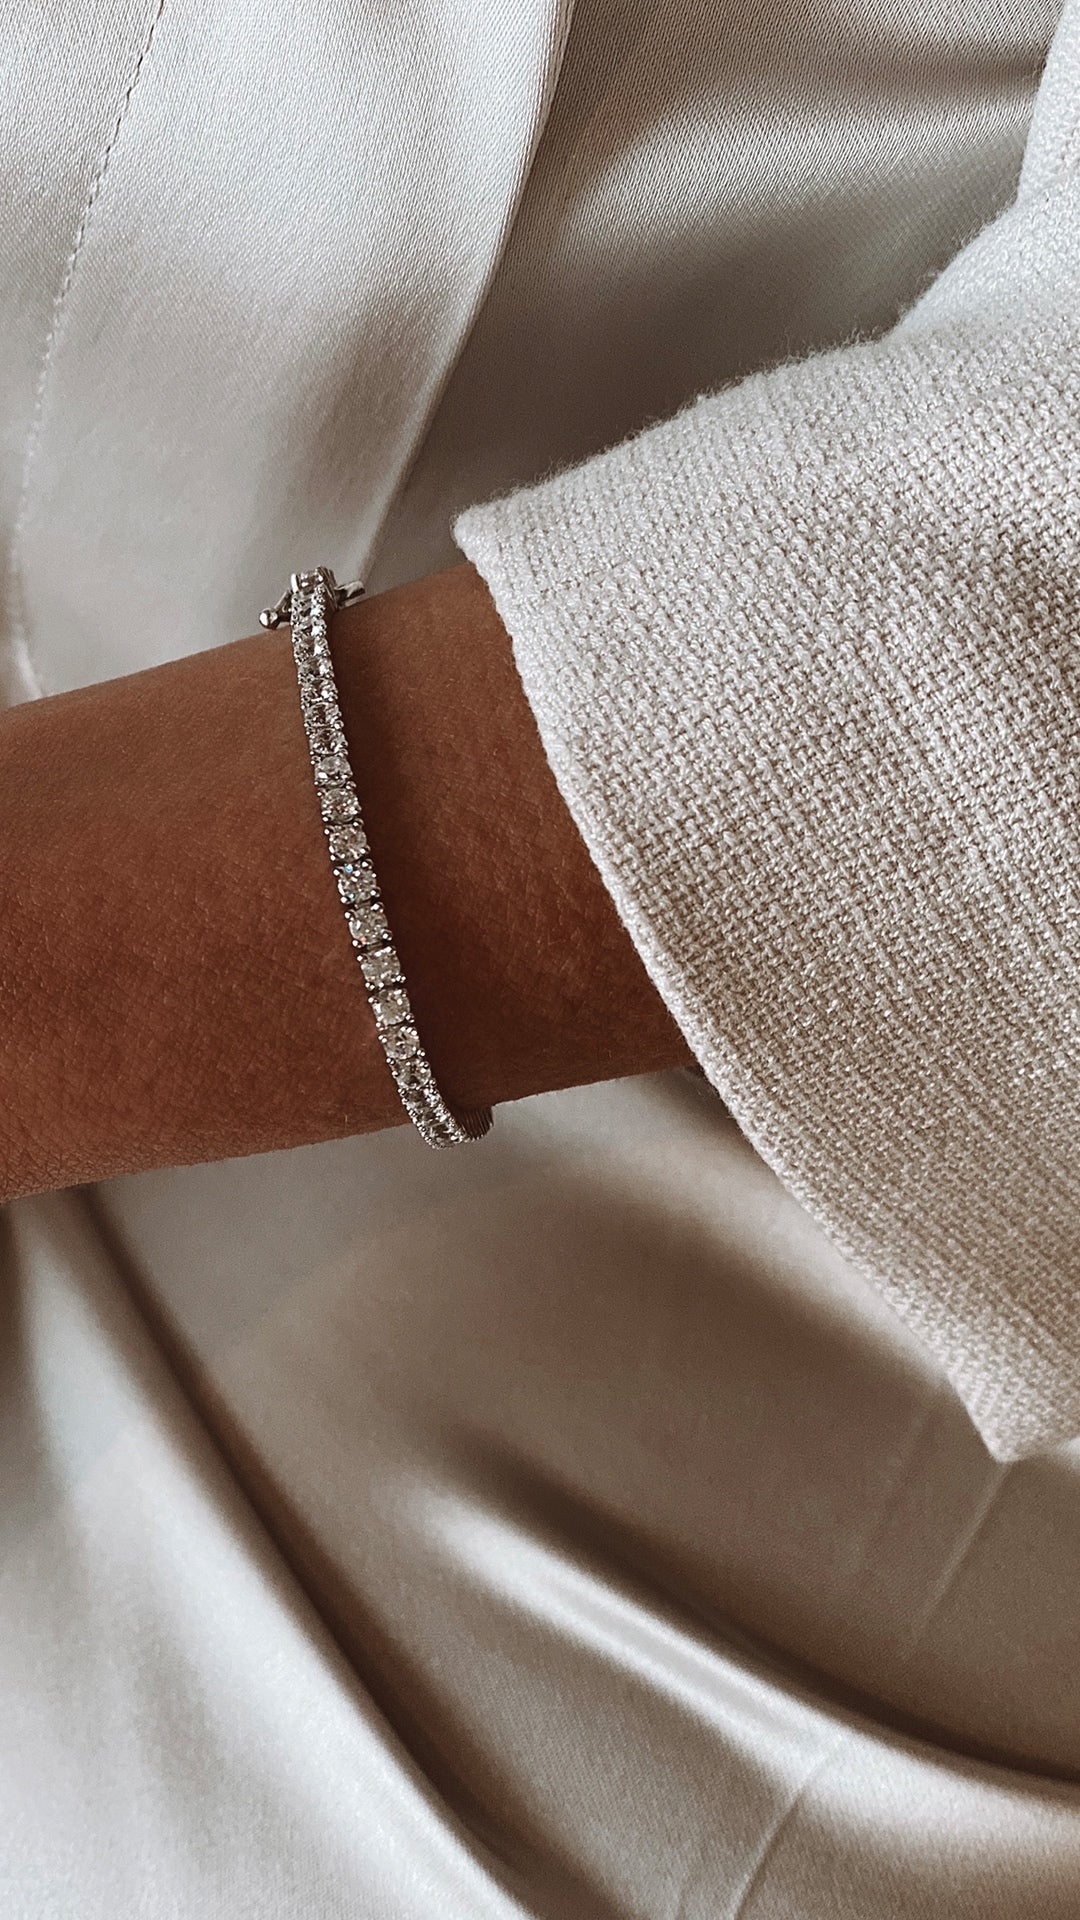 MONICA VINADER - Riva Mini Kite sterling silver diamond bracelet |  Selfridges.com